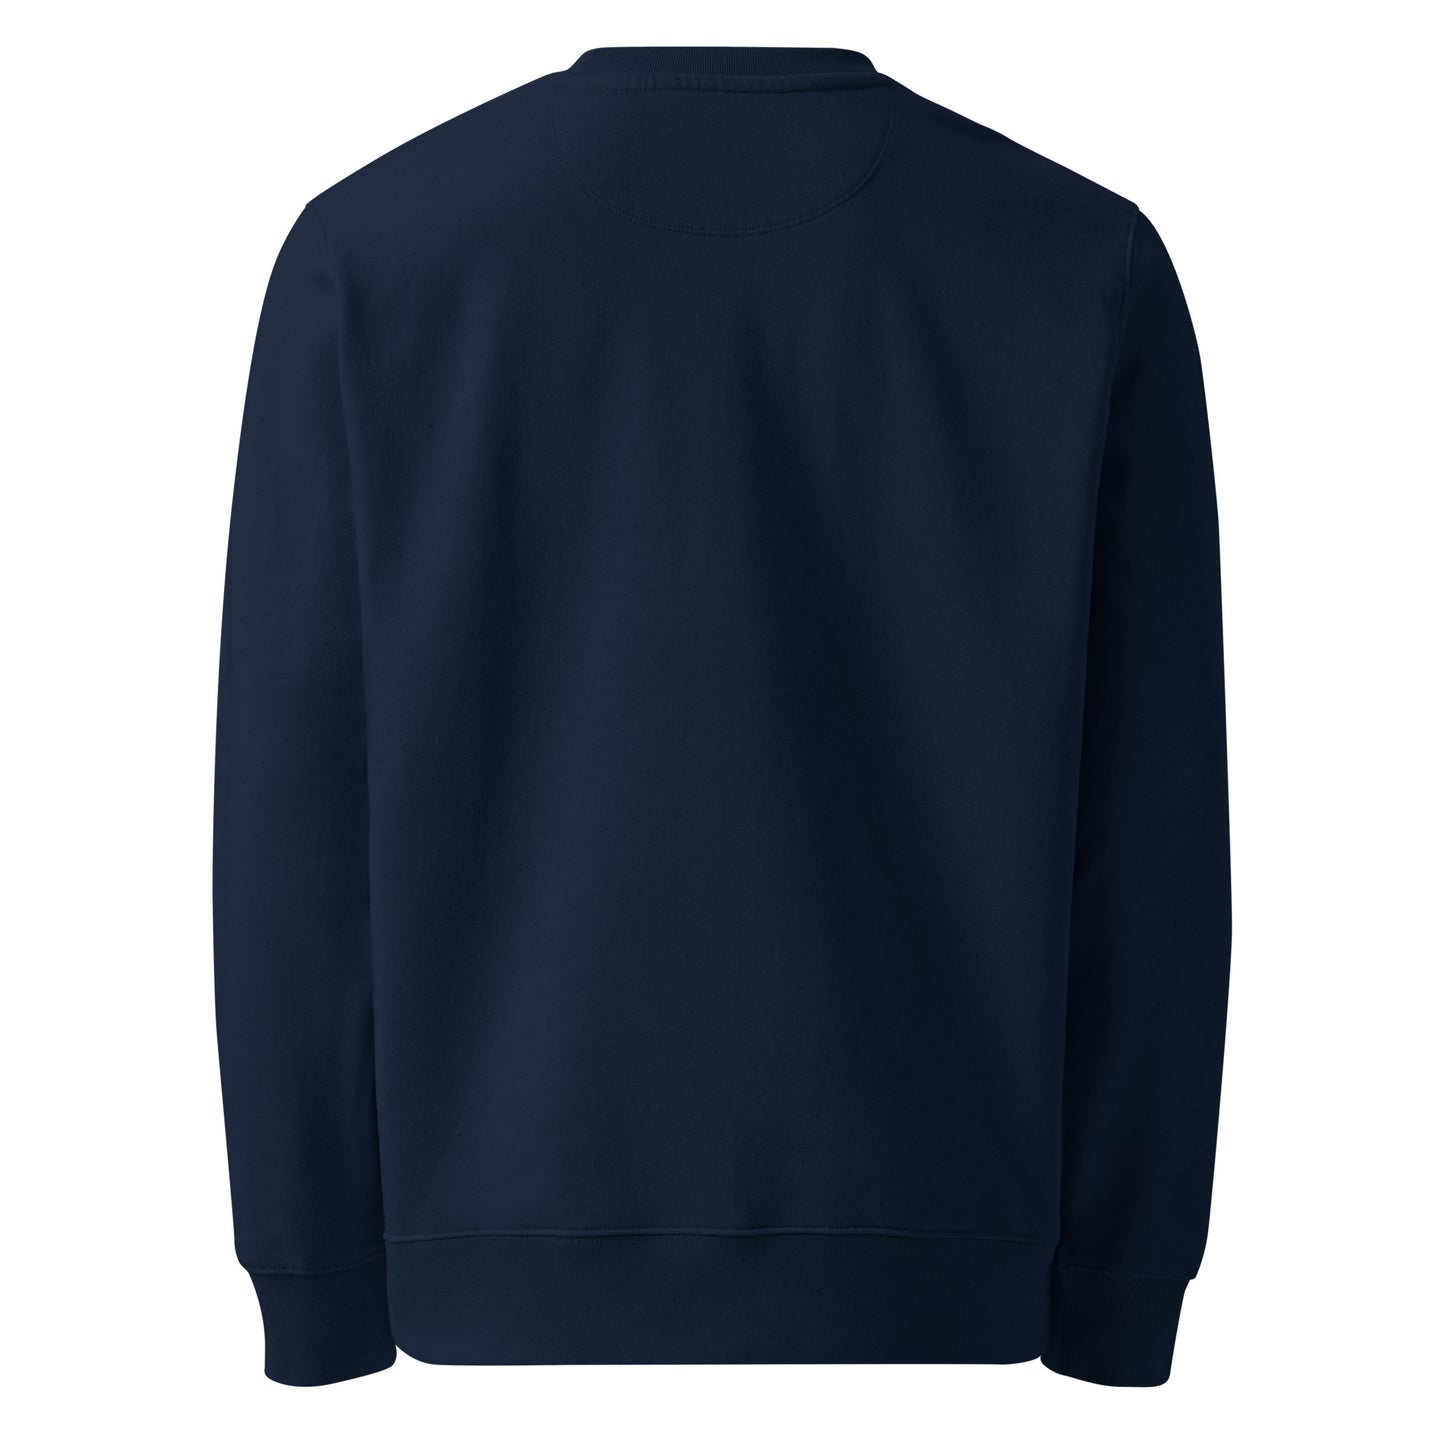 GoodTime Unisex eco sweatshirt